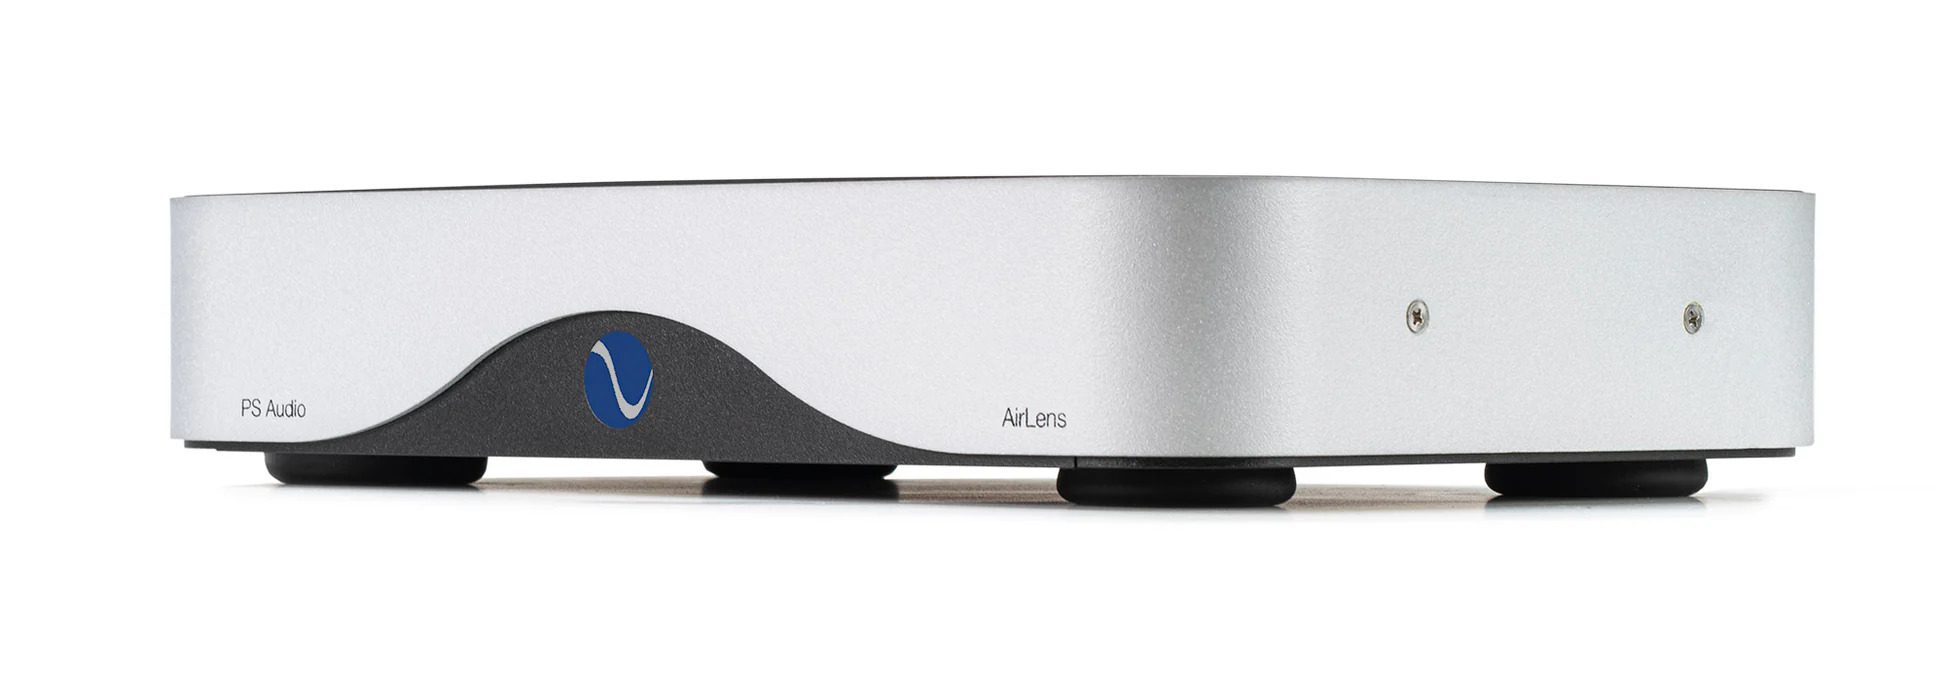 Banc d'essai : Streamer réseau PS Audio AirLens